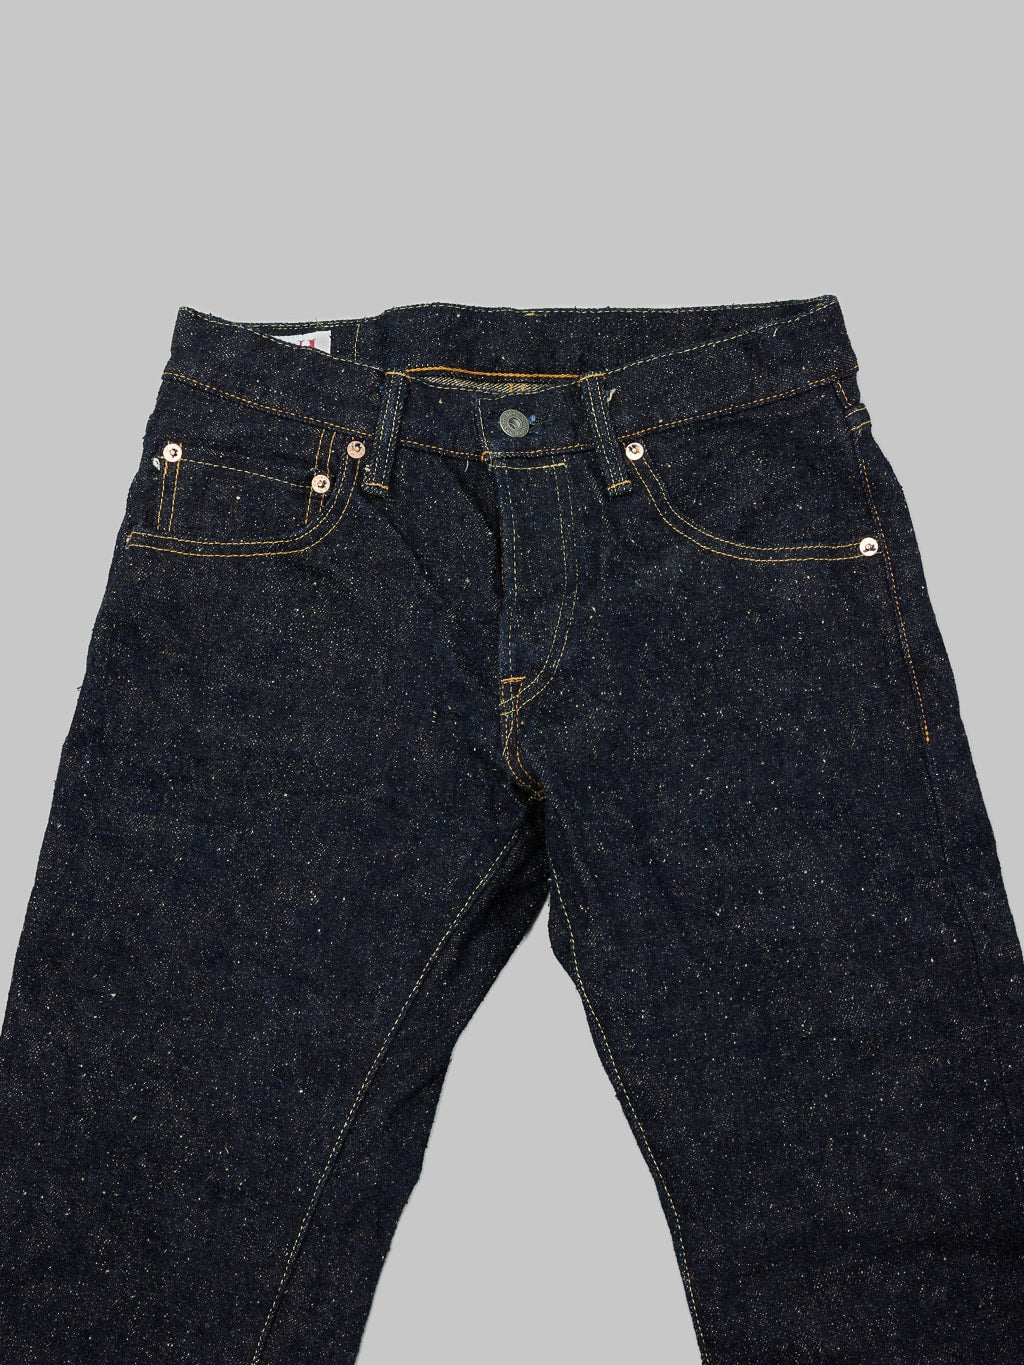 ONI Denim 288 Asphalt 20oz Regular Straight Jeans waist